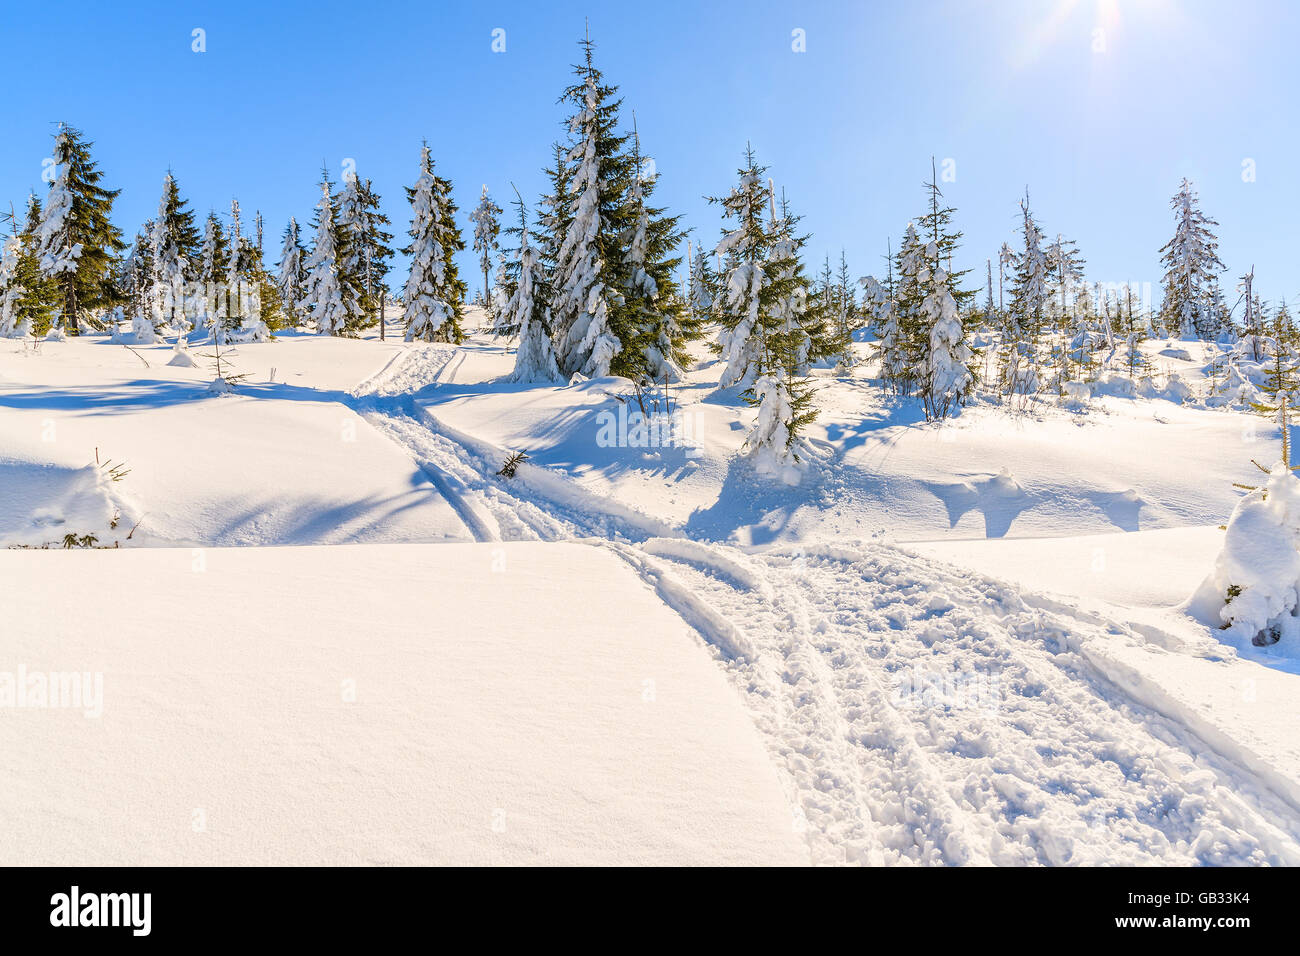 Piste de ski d'hiver dans la neige fraîche dans les montagnes Gorce, Pologne Banque D'Images